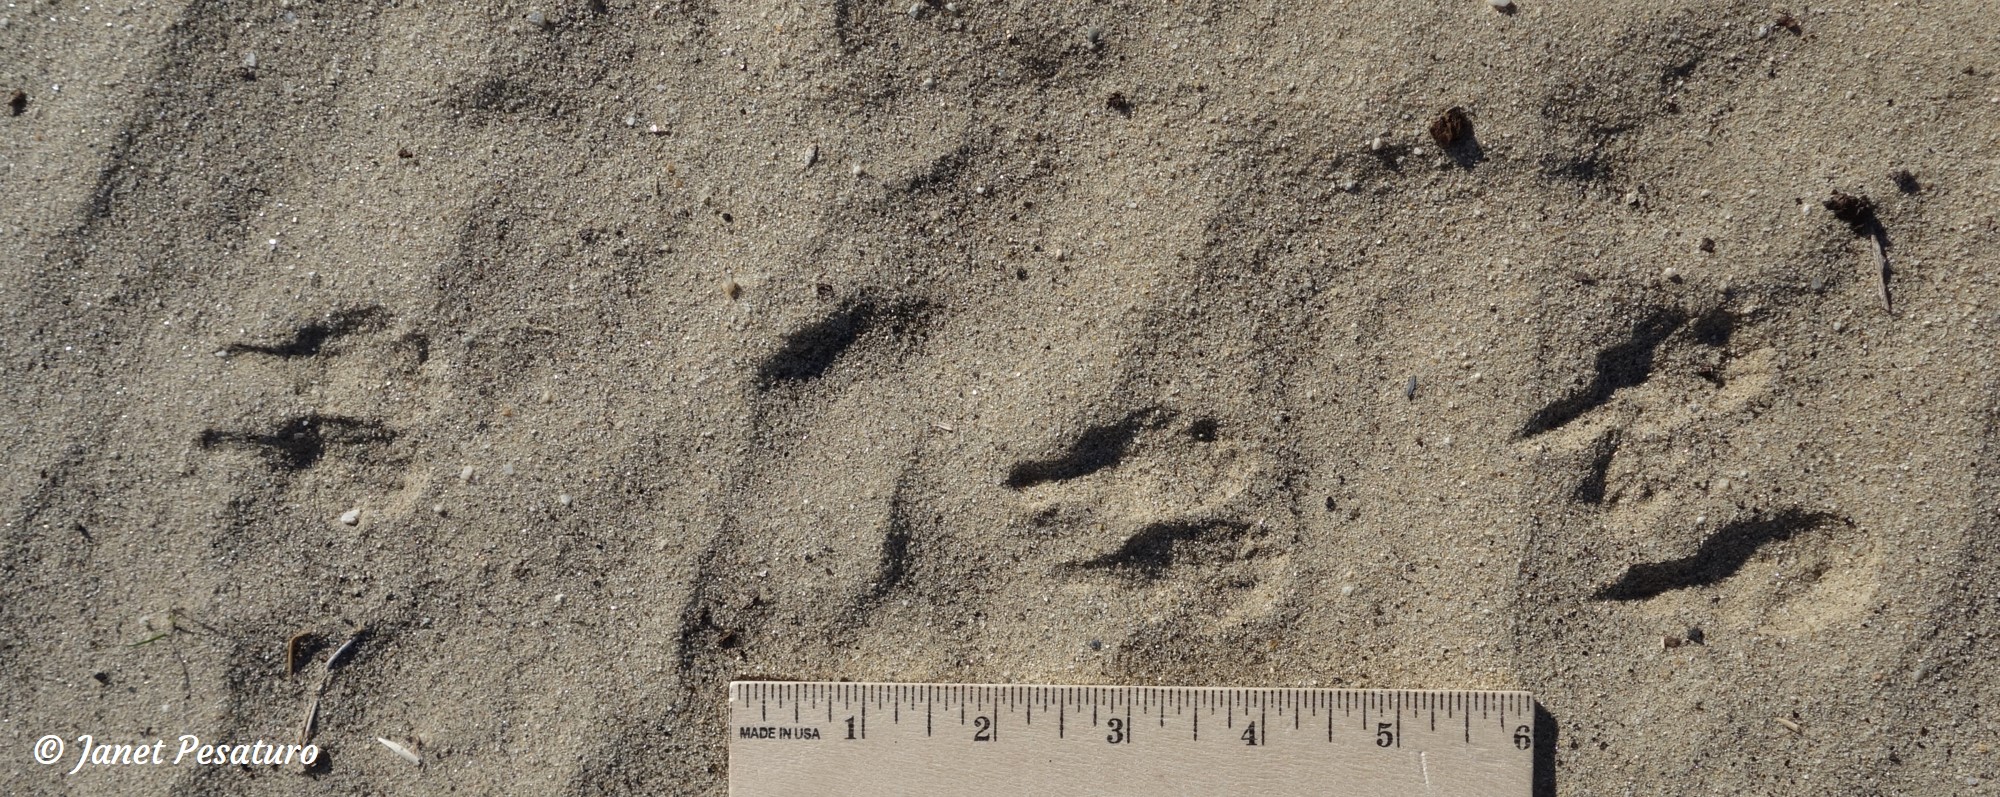 kangaroo rat tracks in typical bipedal hopping pattern